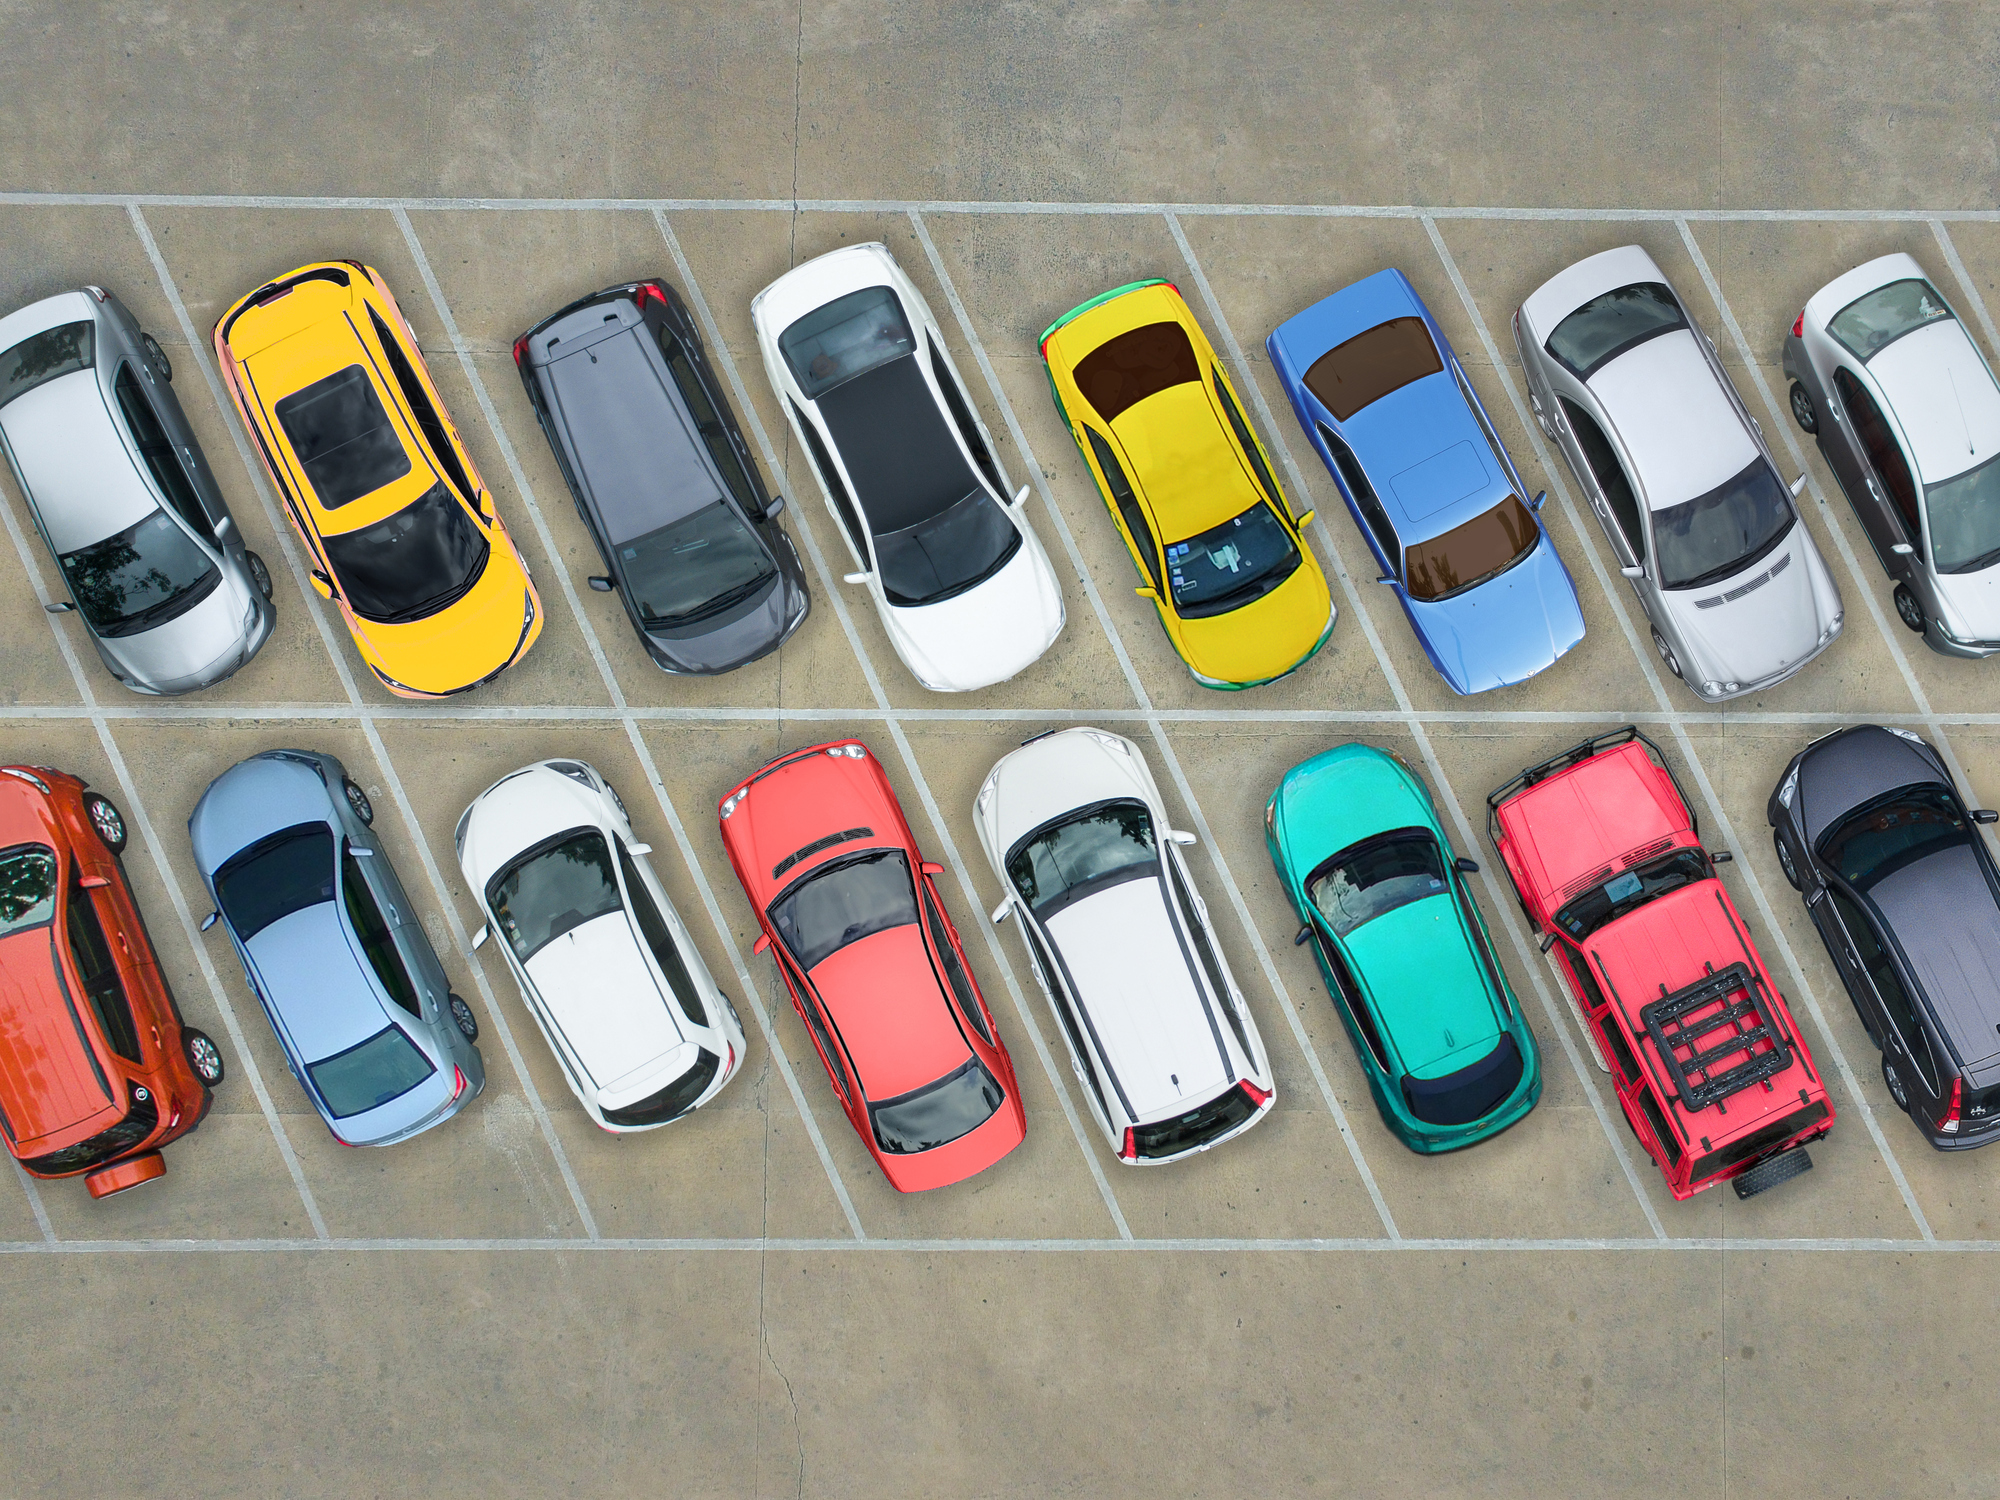 The Parking REIT Internalizes Management, Discloses Class Action Lawsuit